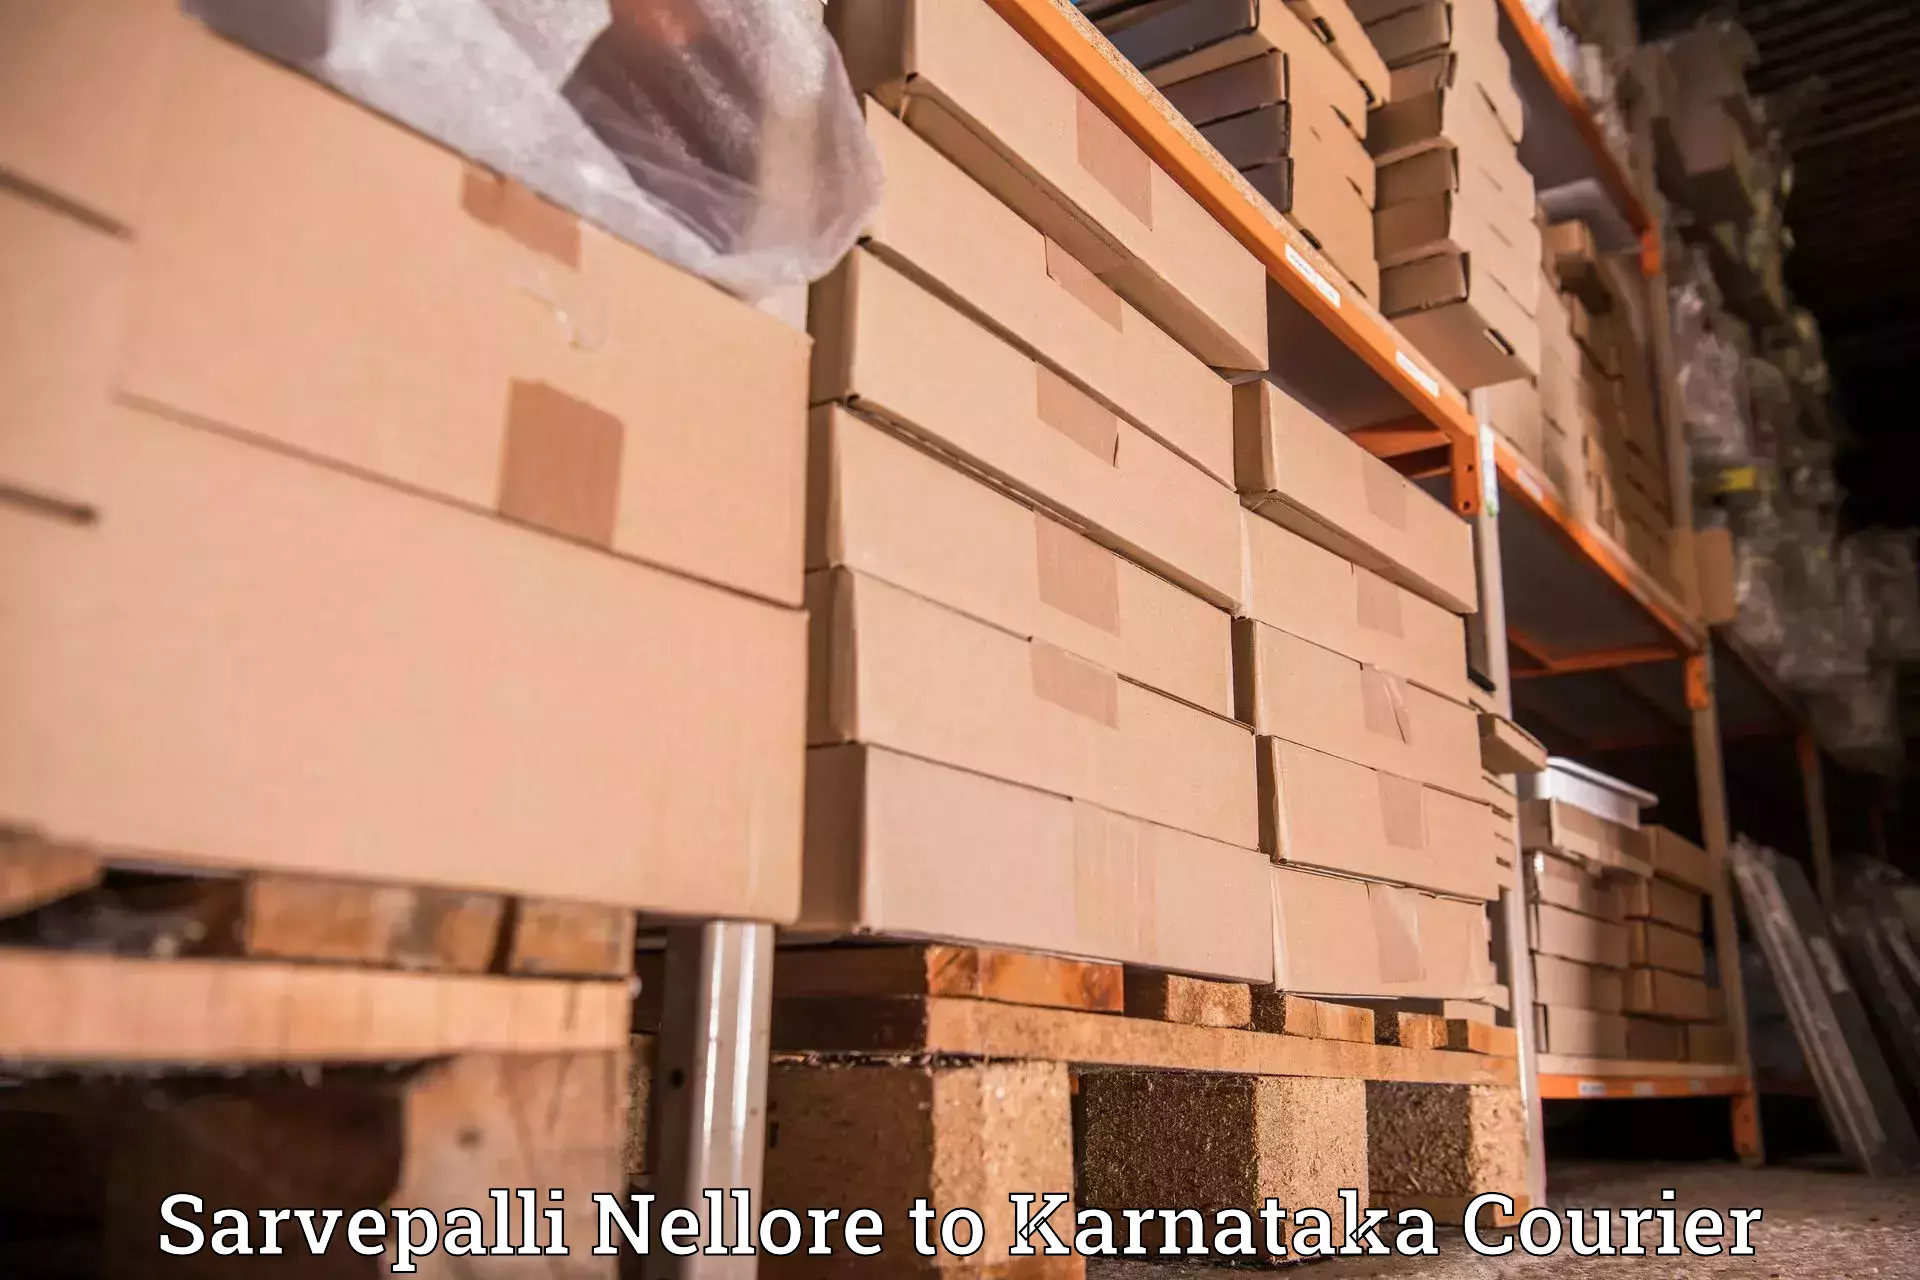 Efficient freight service Sarvepalli Nellore to Uttara Kannada